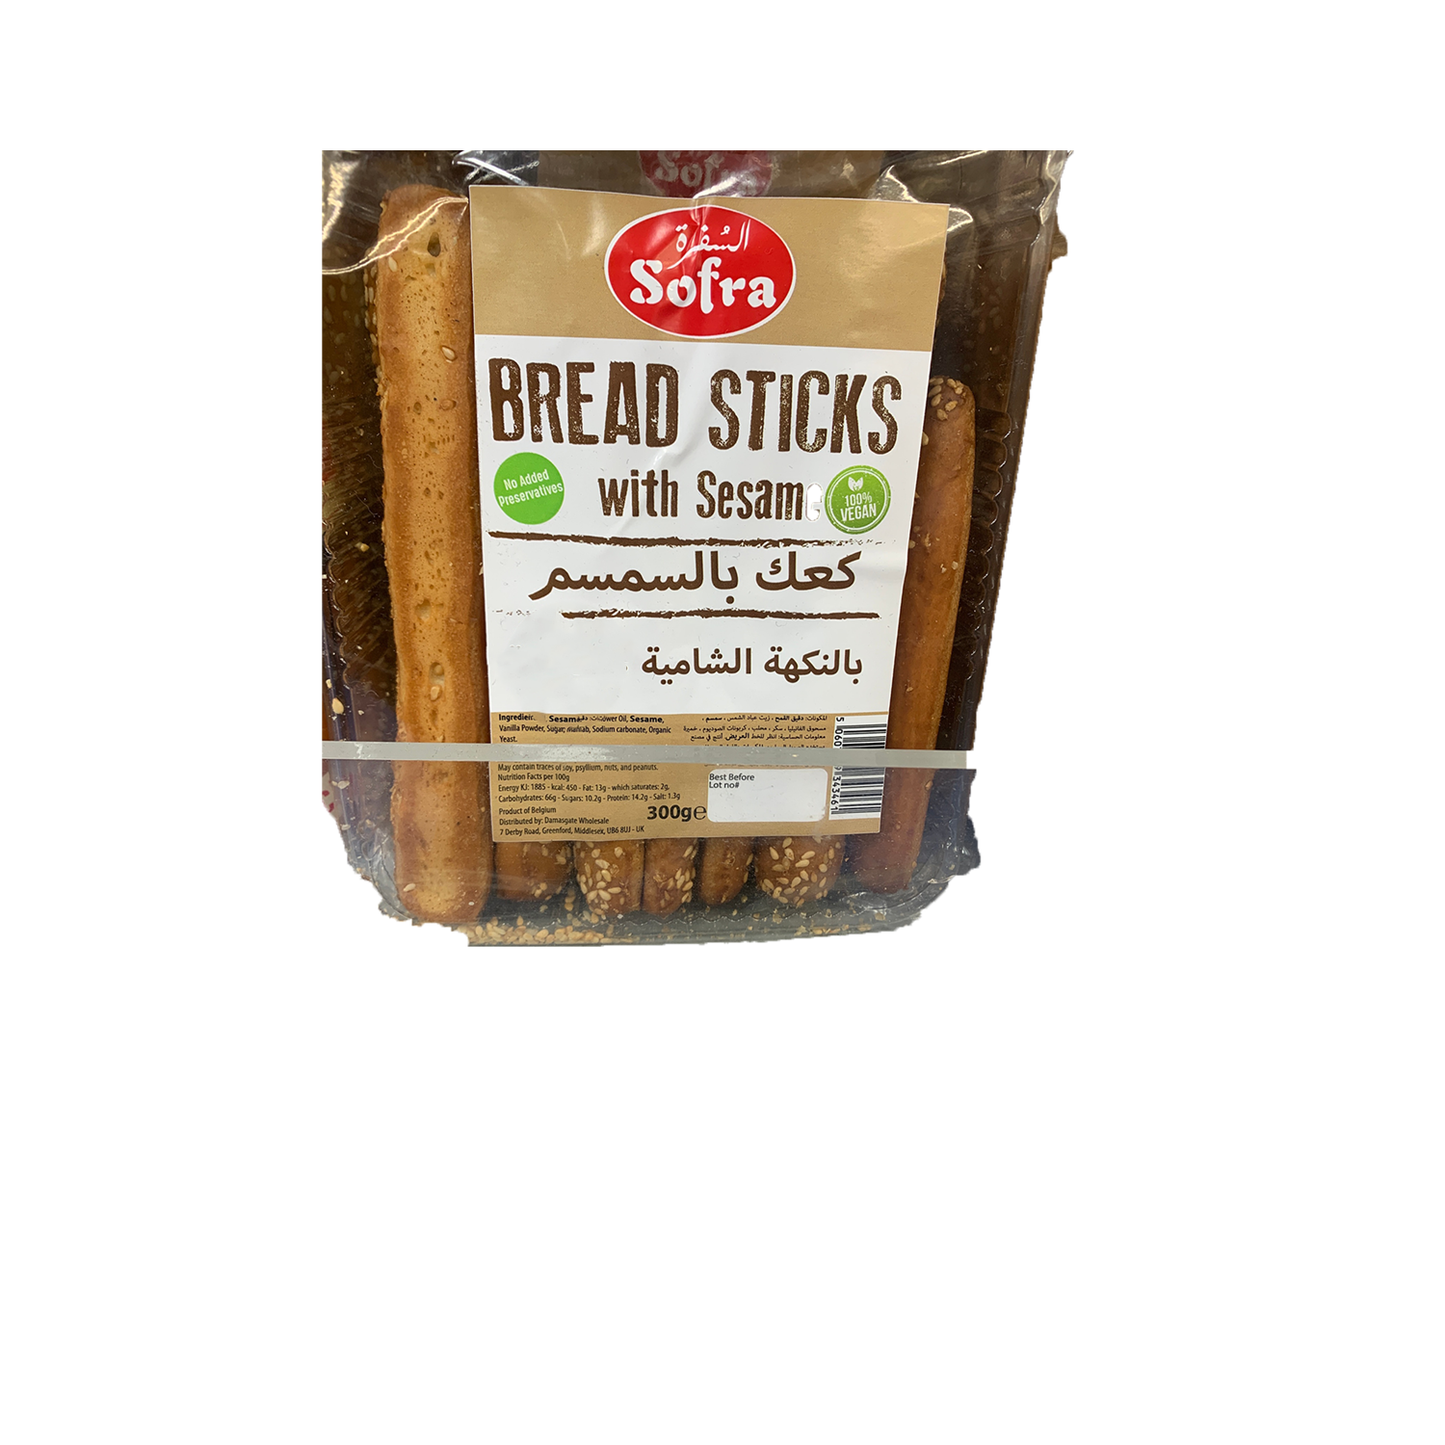 Sofra Bread Sticks With Sesame Seeds Shamiea 300g